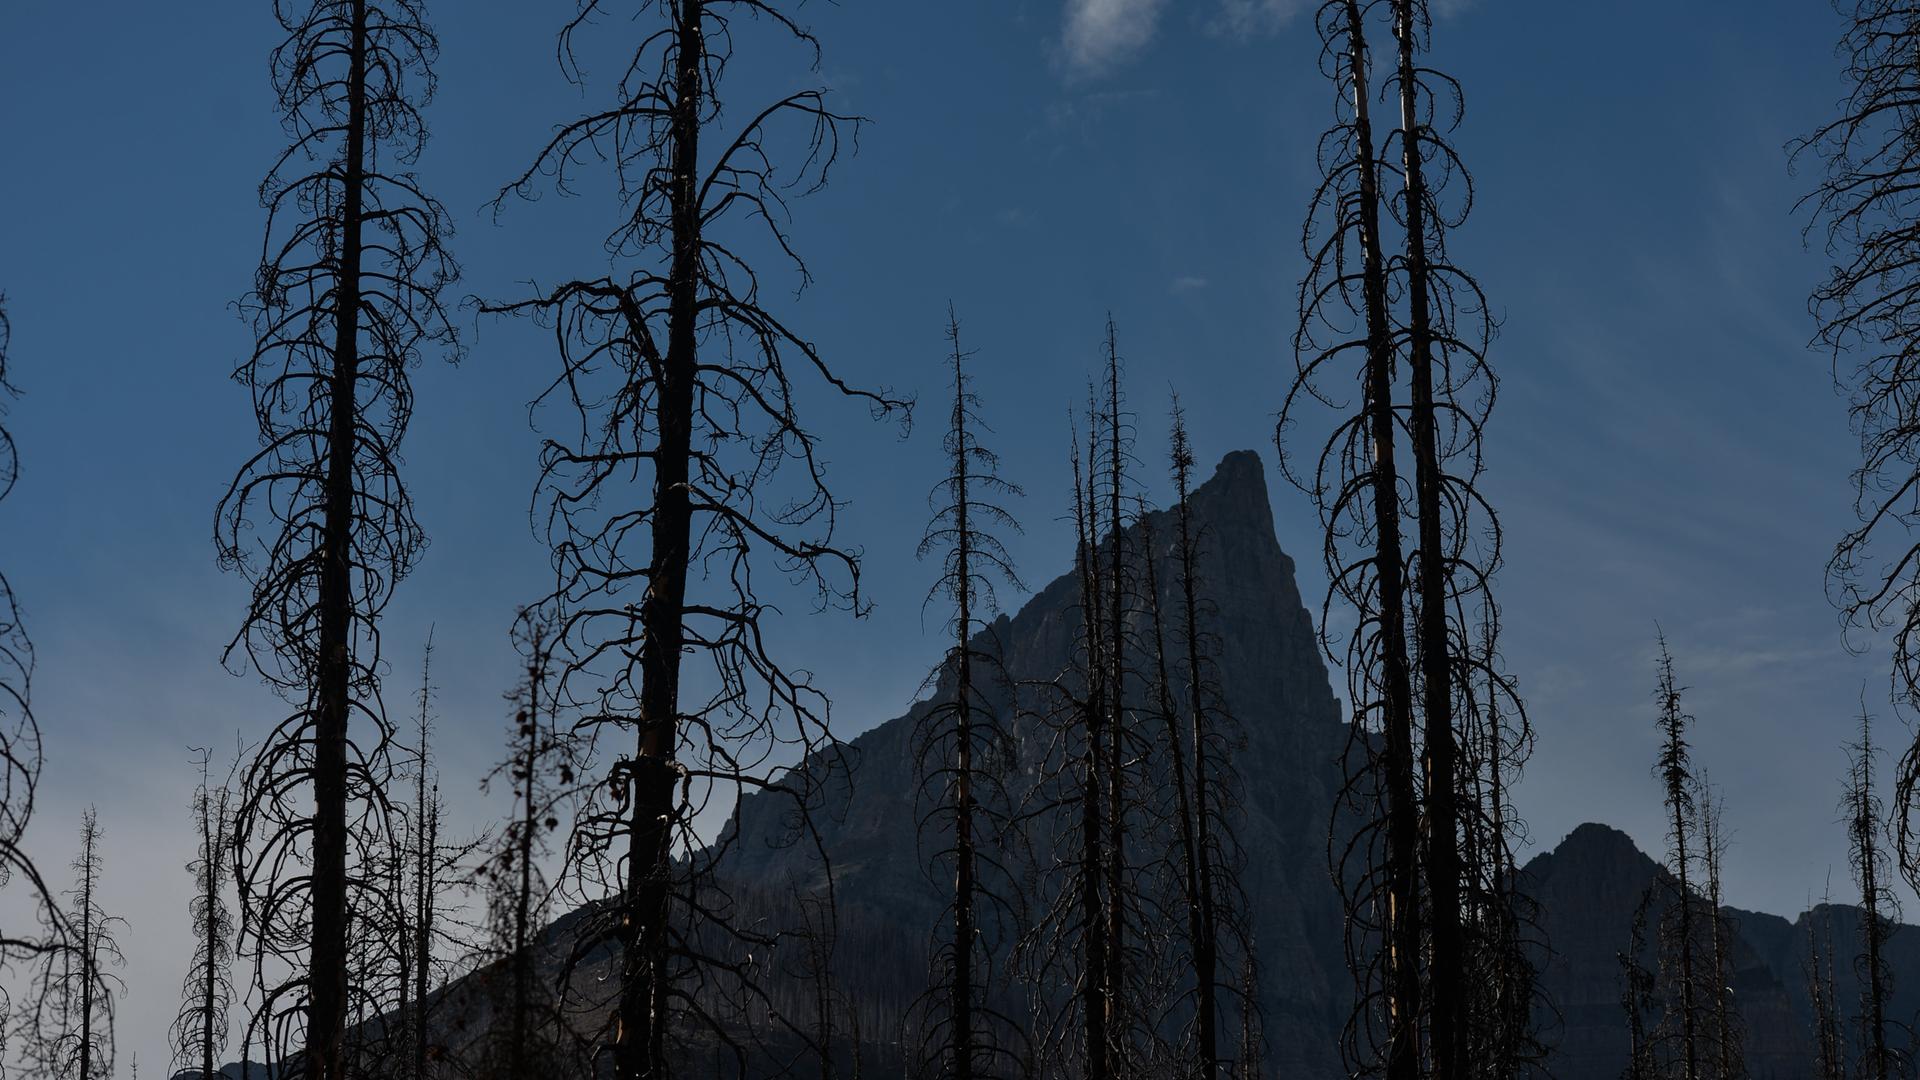 Verbrannte Bäume stehen herum und sind in Umrissen zu erkennen. Im Hintergrund zeichnet sich ein großer Berg ab.